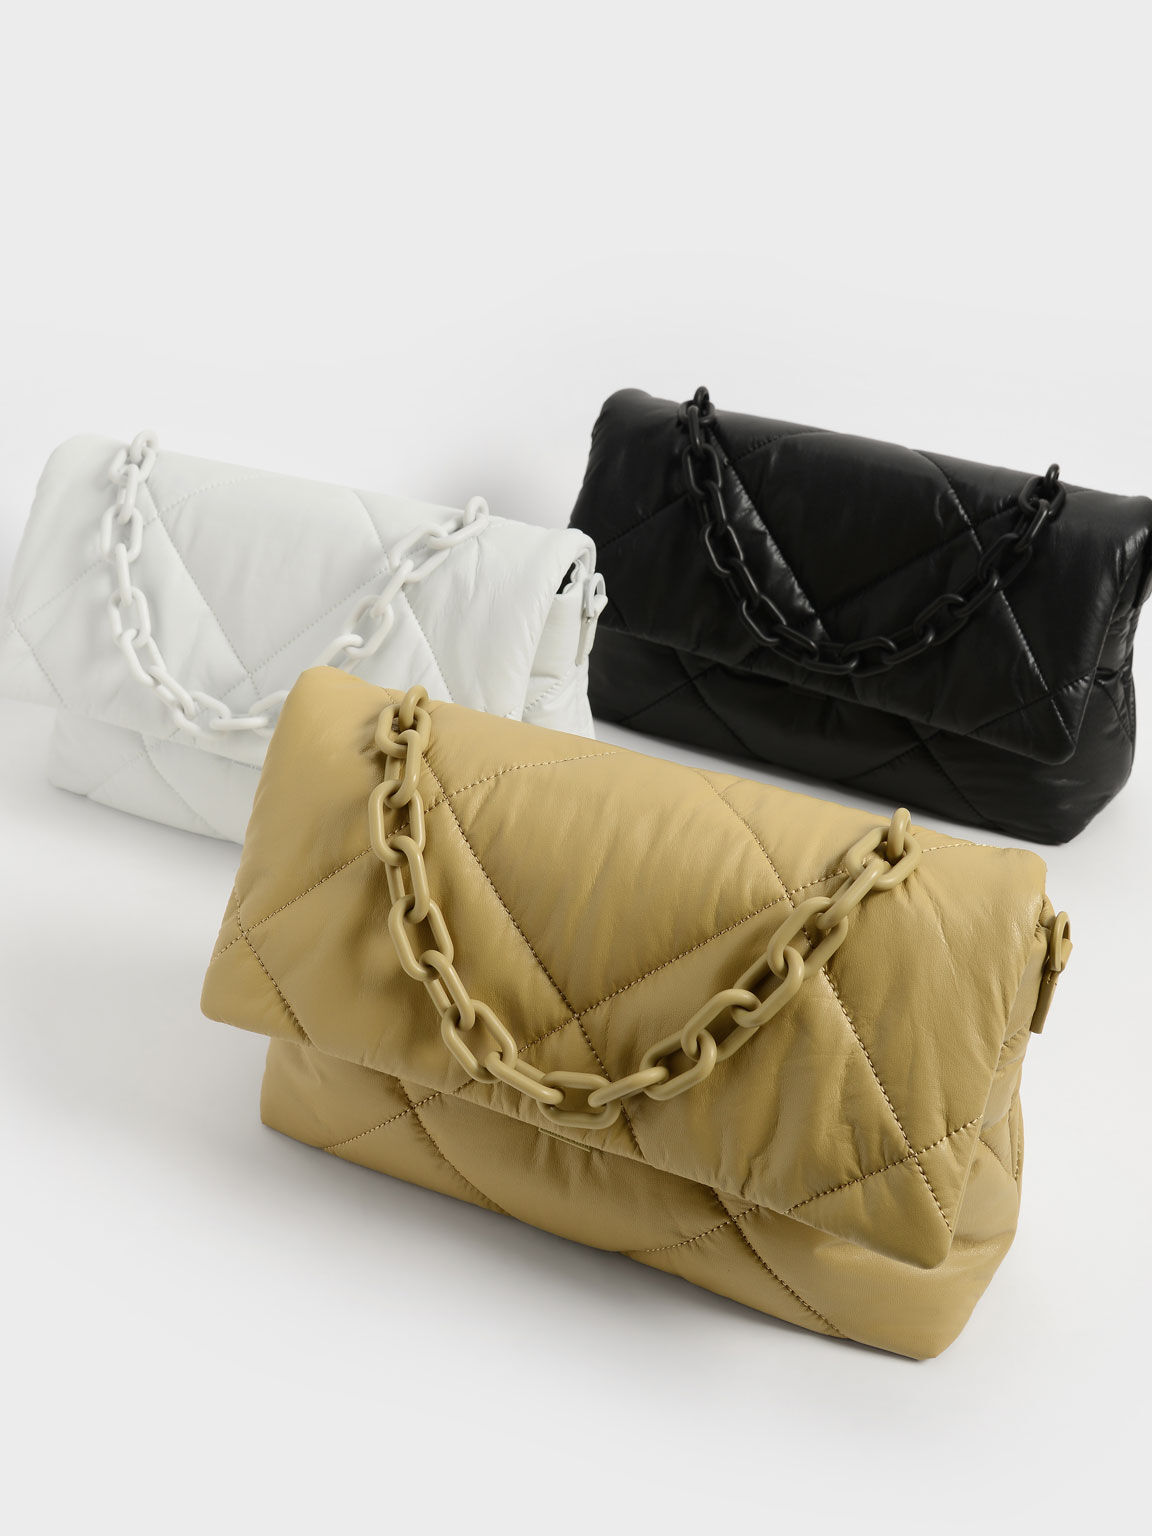 Lin Puffer Chain Shoulder Bag, Sand, hi-res